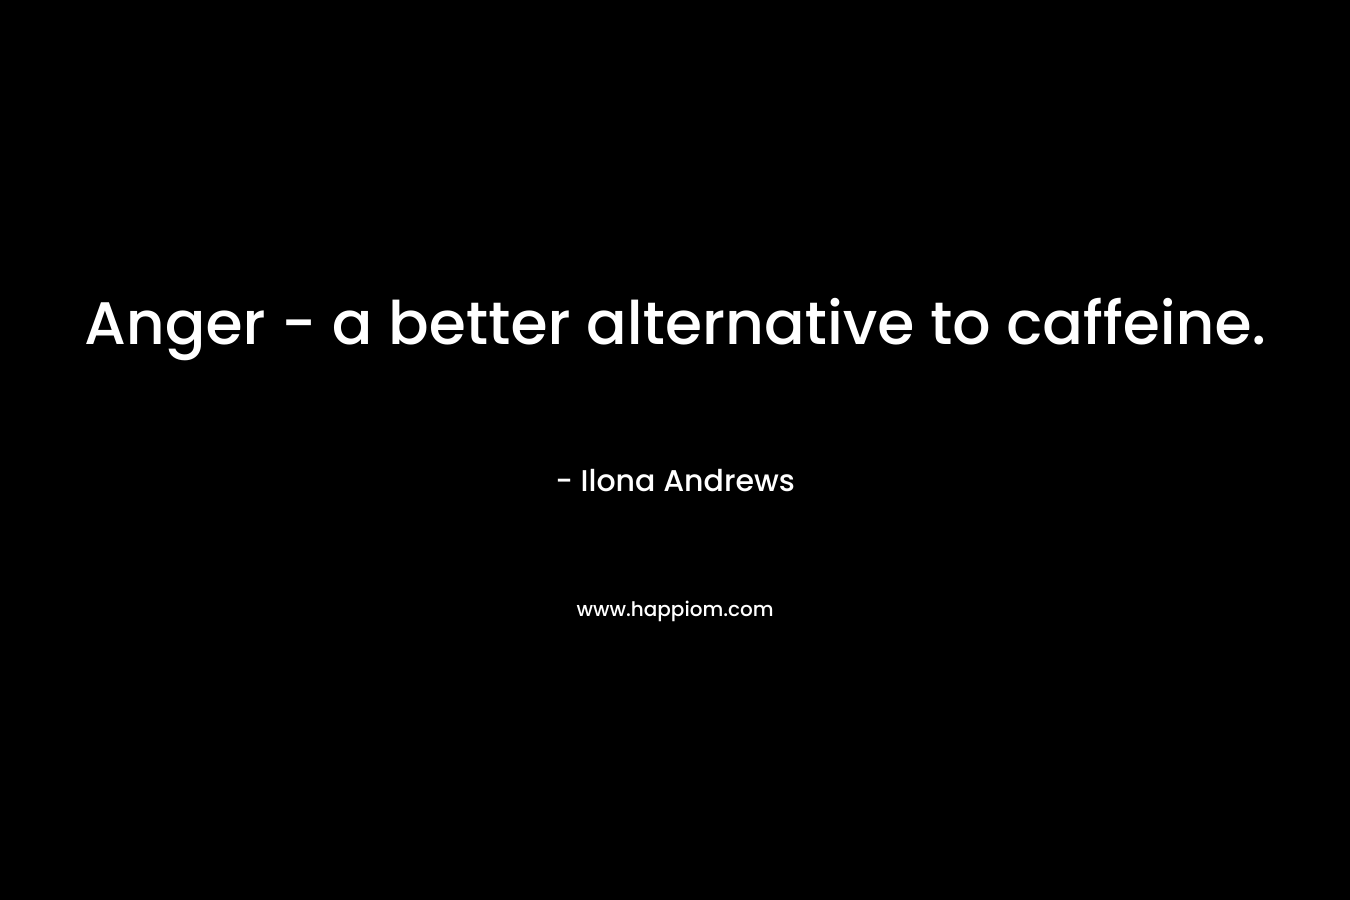 Anger - a better alternative to caffeine.